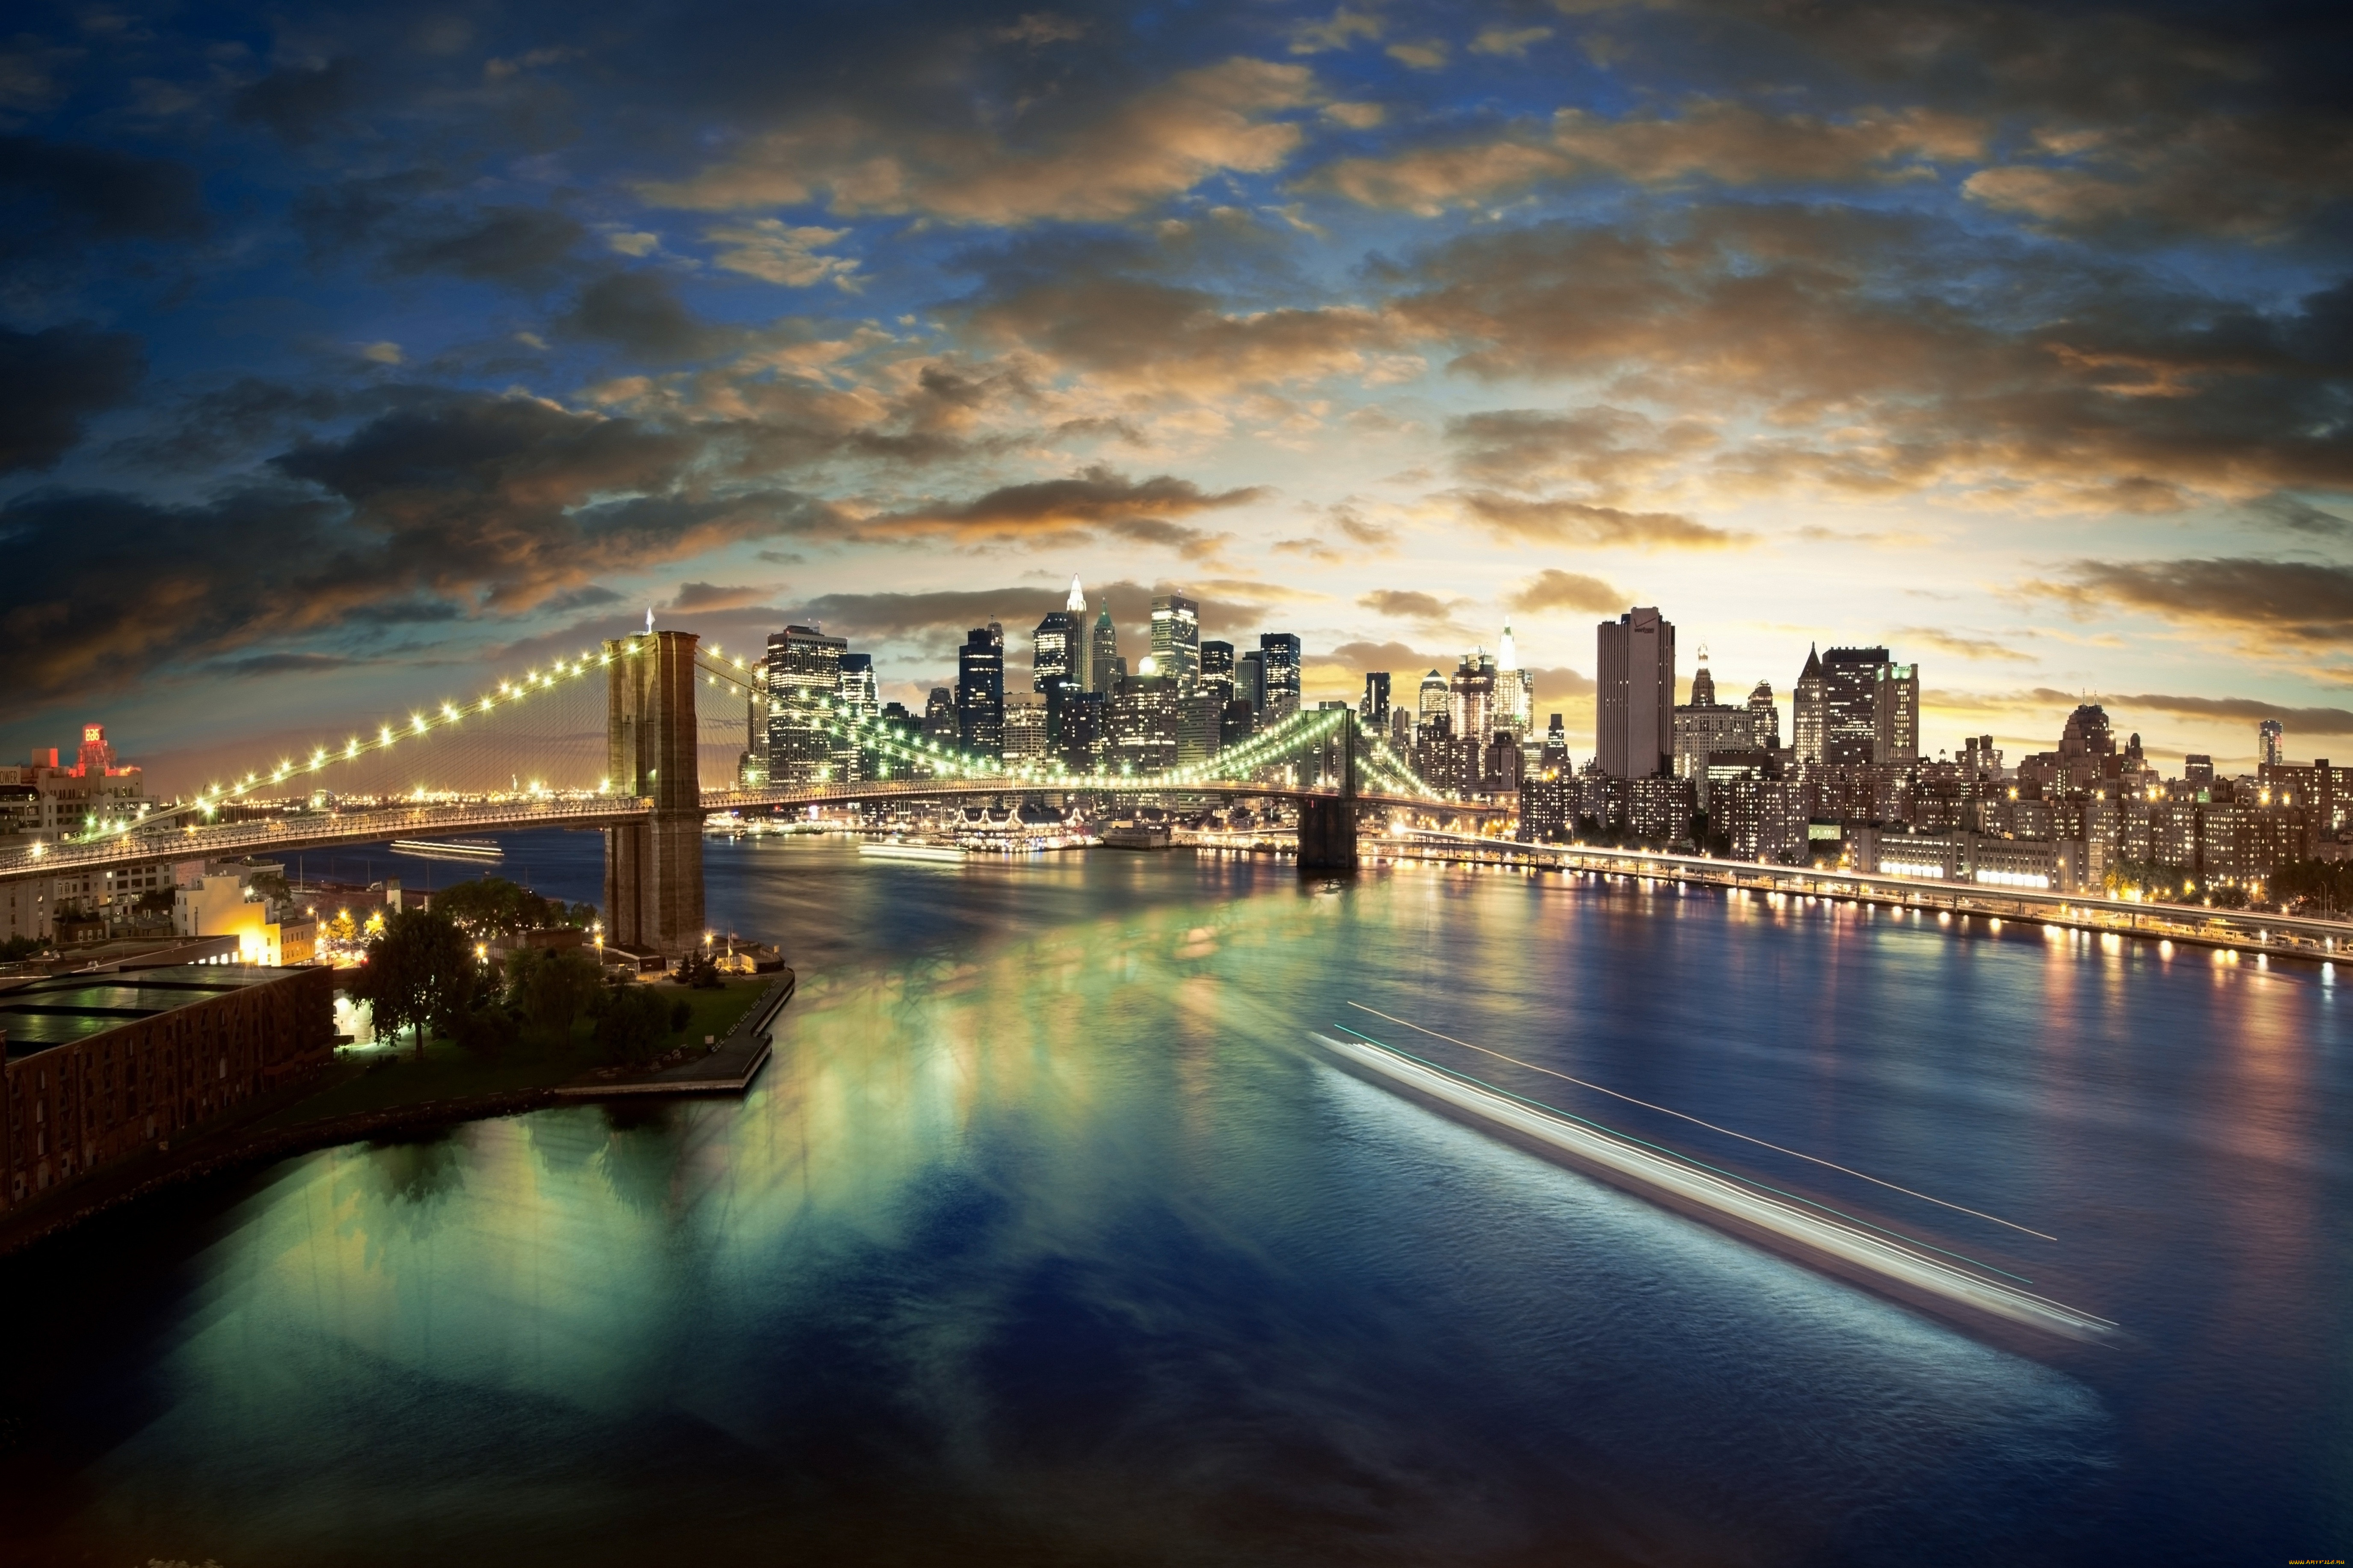 Обои 2560 1600. Бруклинский мост Нью-Йорк. Бруклинский мост панорама. Бруклинский мост Нью-Йорк панорама. Мост, Нью-Йорк, река, Манхеттен.